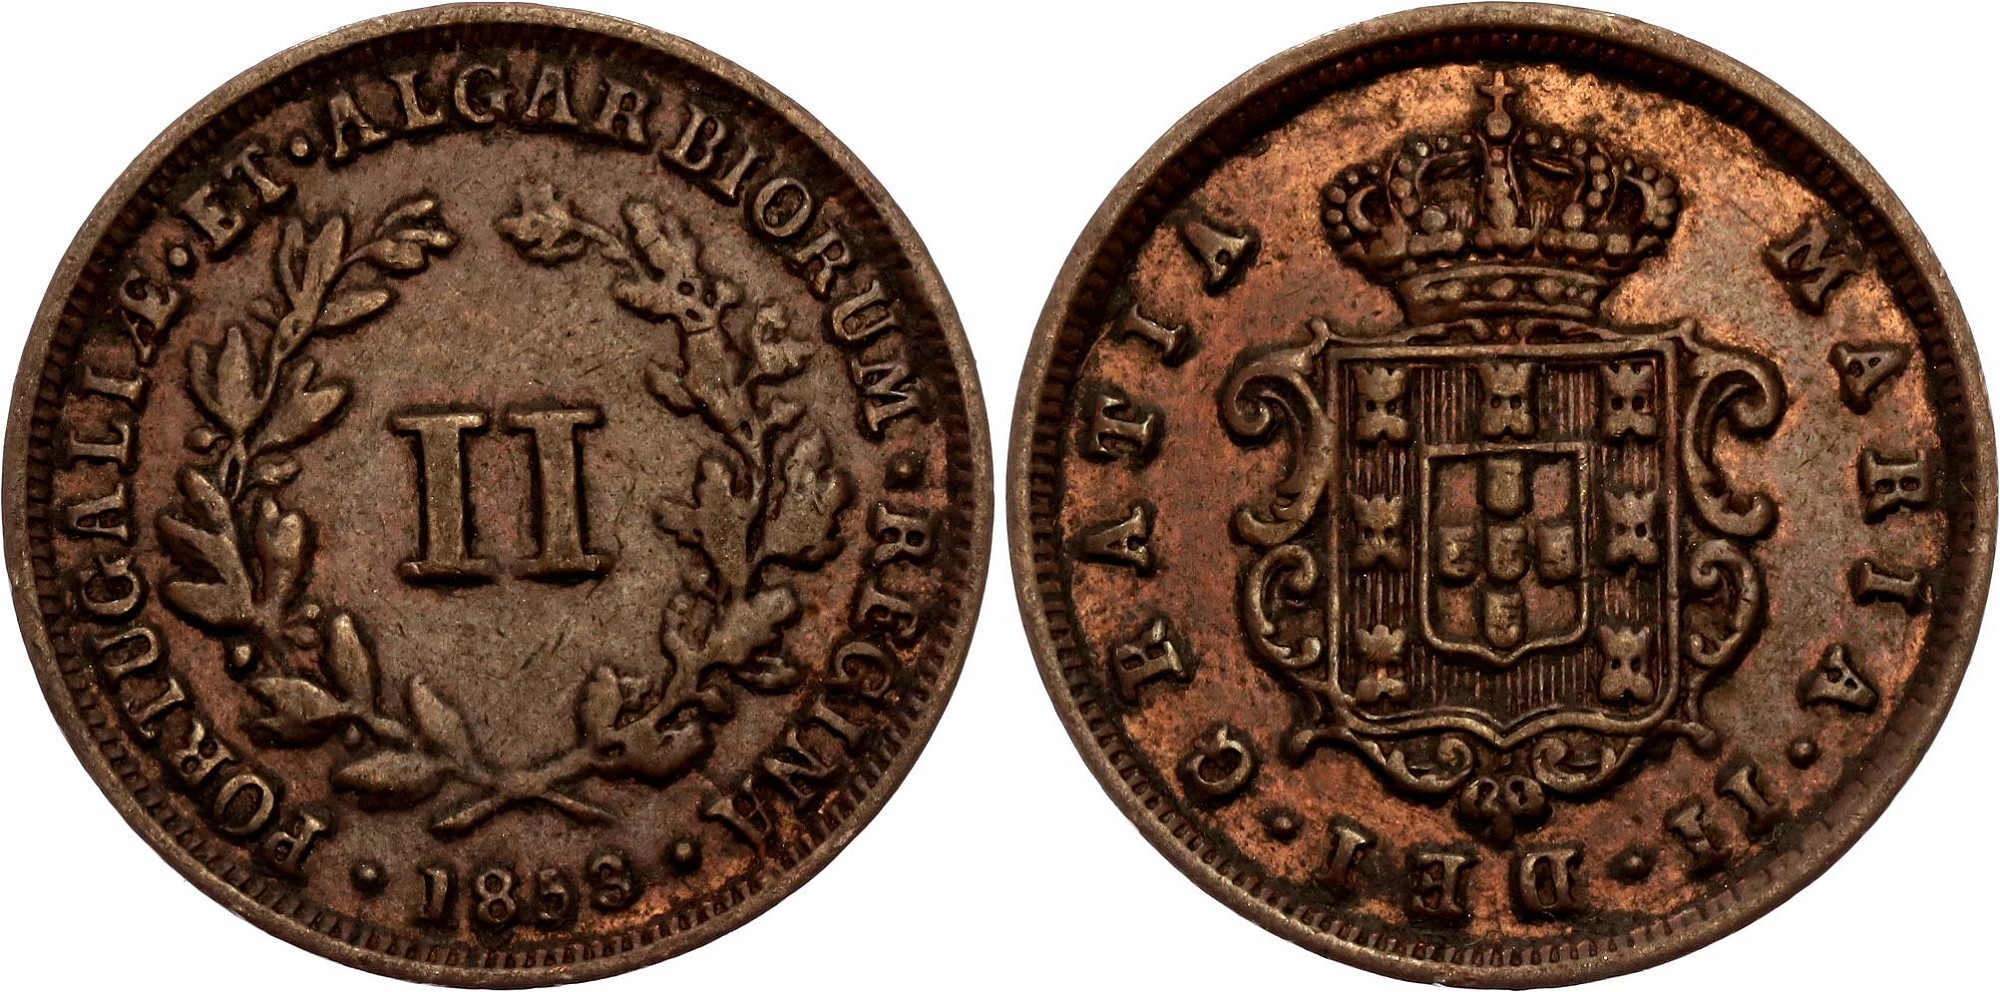 1952 1960. Фиджи 1 пенни, 1949-1952. Ямайка 1 пенни, 1938-1947. Монета 1 пенни Великобритания. ЮАР 1 пенни 1942..